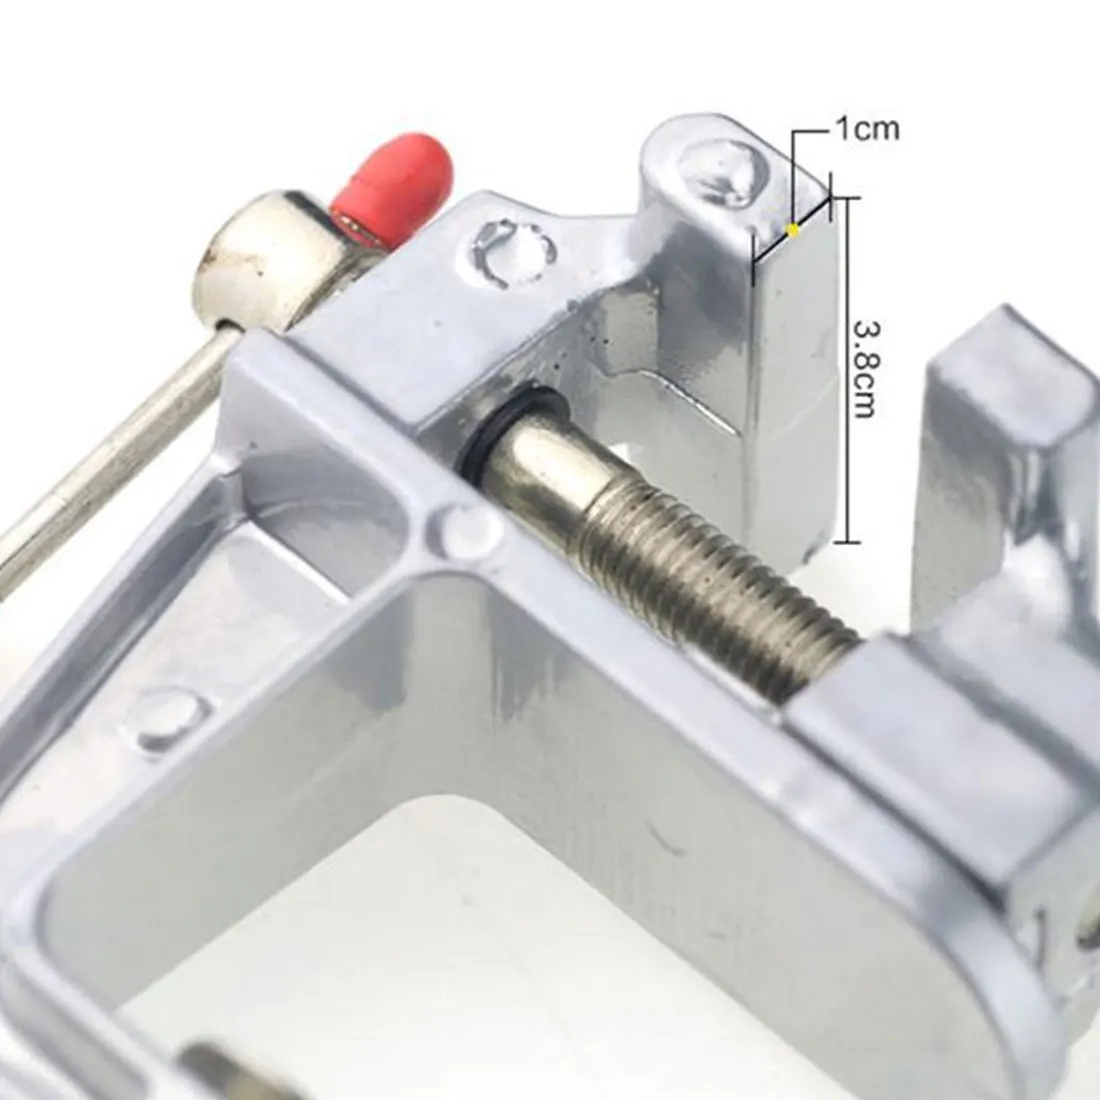 Алюминиевый миниатюрный маленький хобби ювелира зажим на стол и скамья Мини инструмент тиски 30 мм зажим открытие